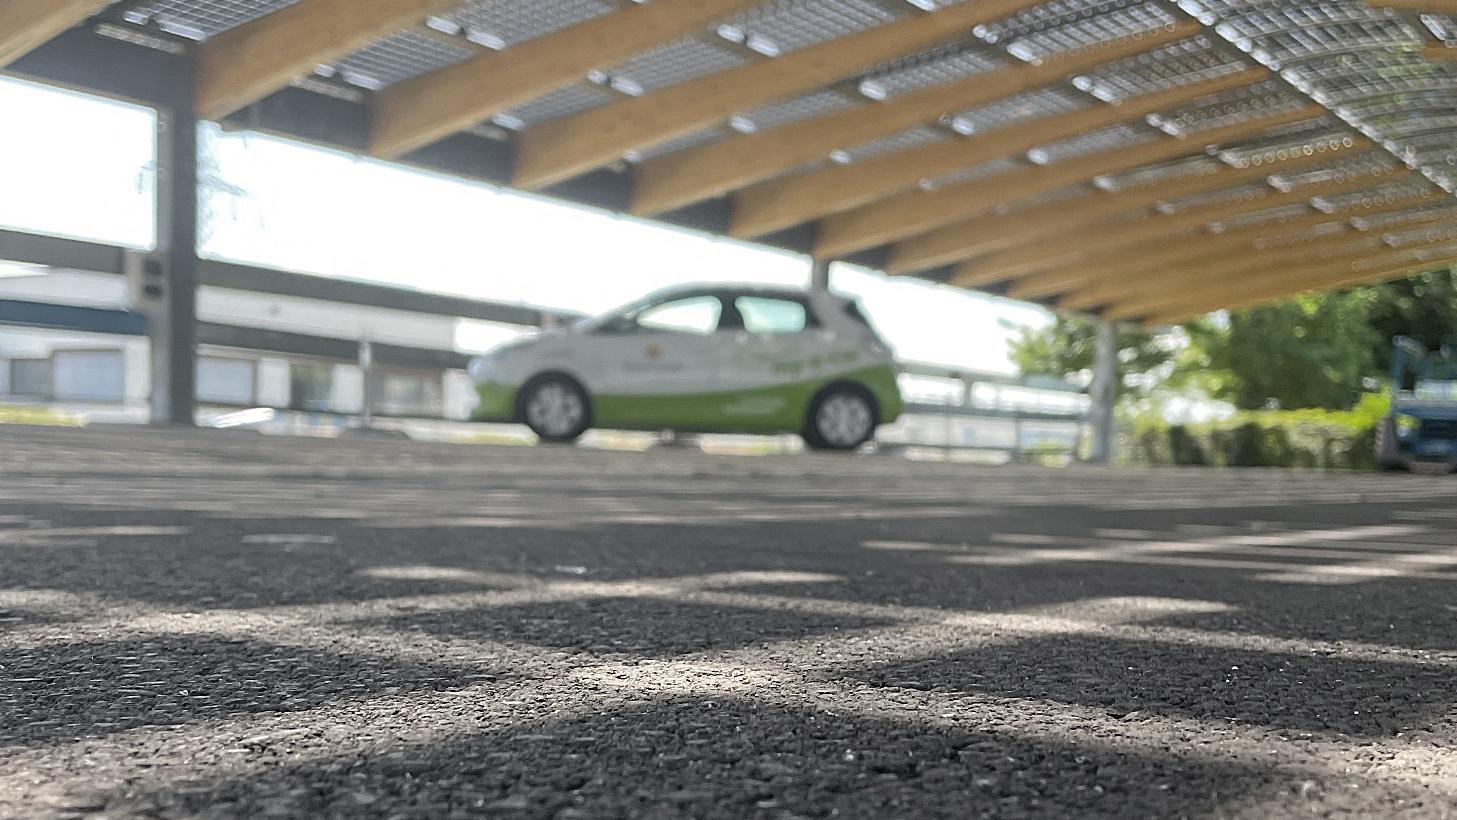 Schattenspiel auf Asphaltboden, im Hintergrund steht ein my-e-car unter einem Photovoltaikdach